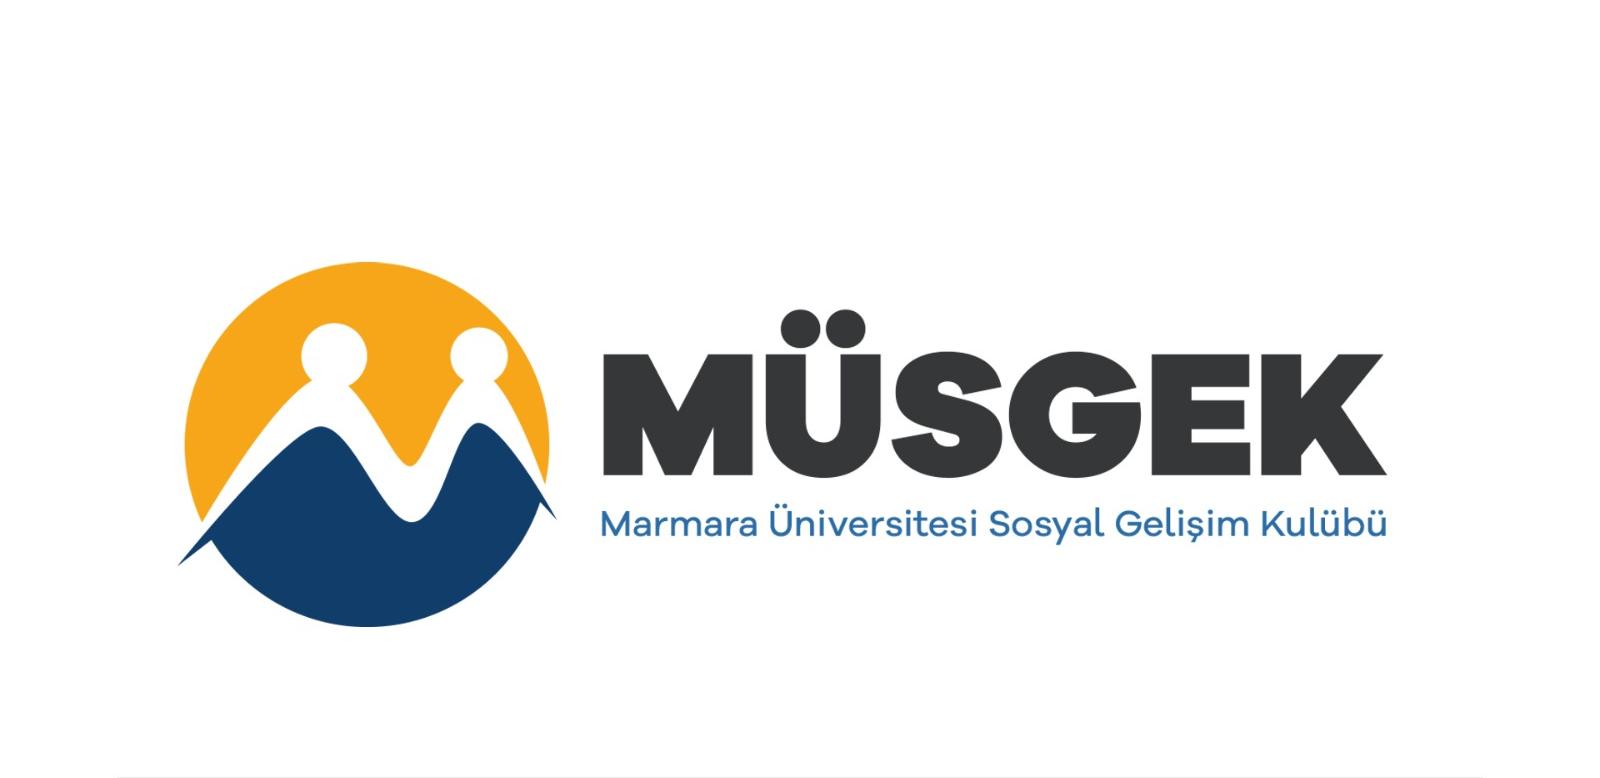 Marmara Üniversitesi Sosyal Gelişim Kulübü (MÜSGEK)